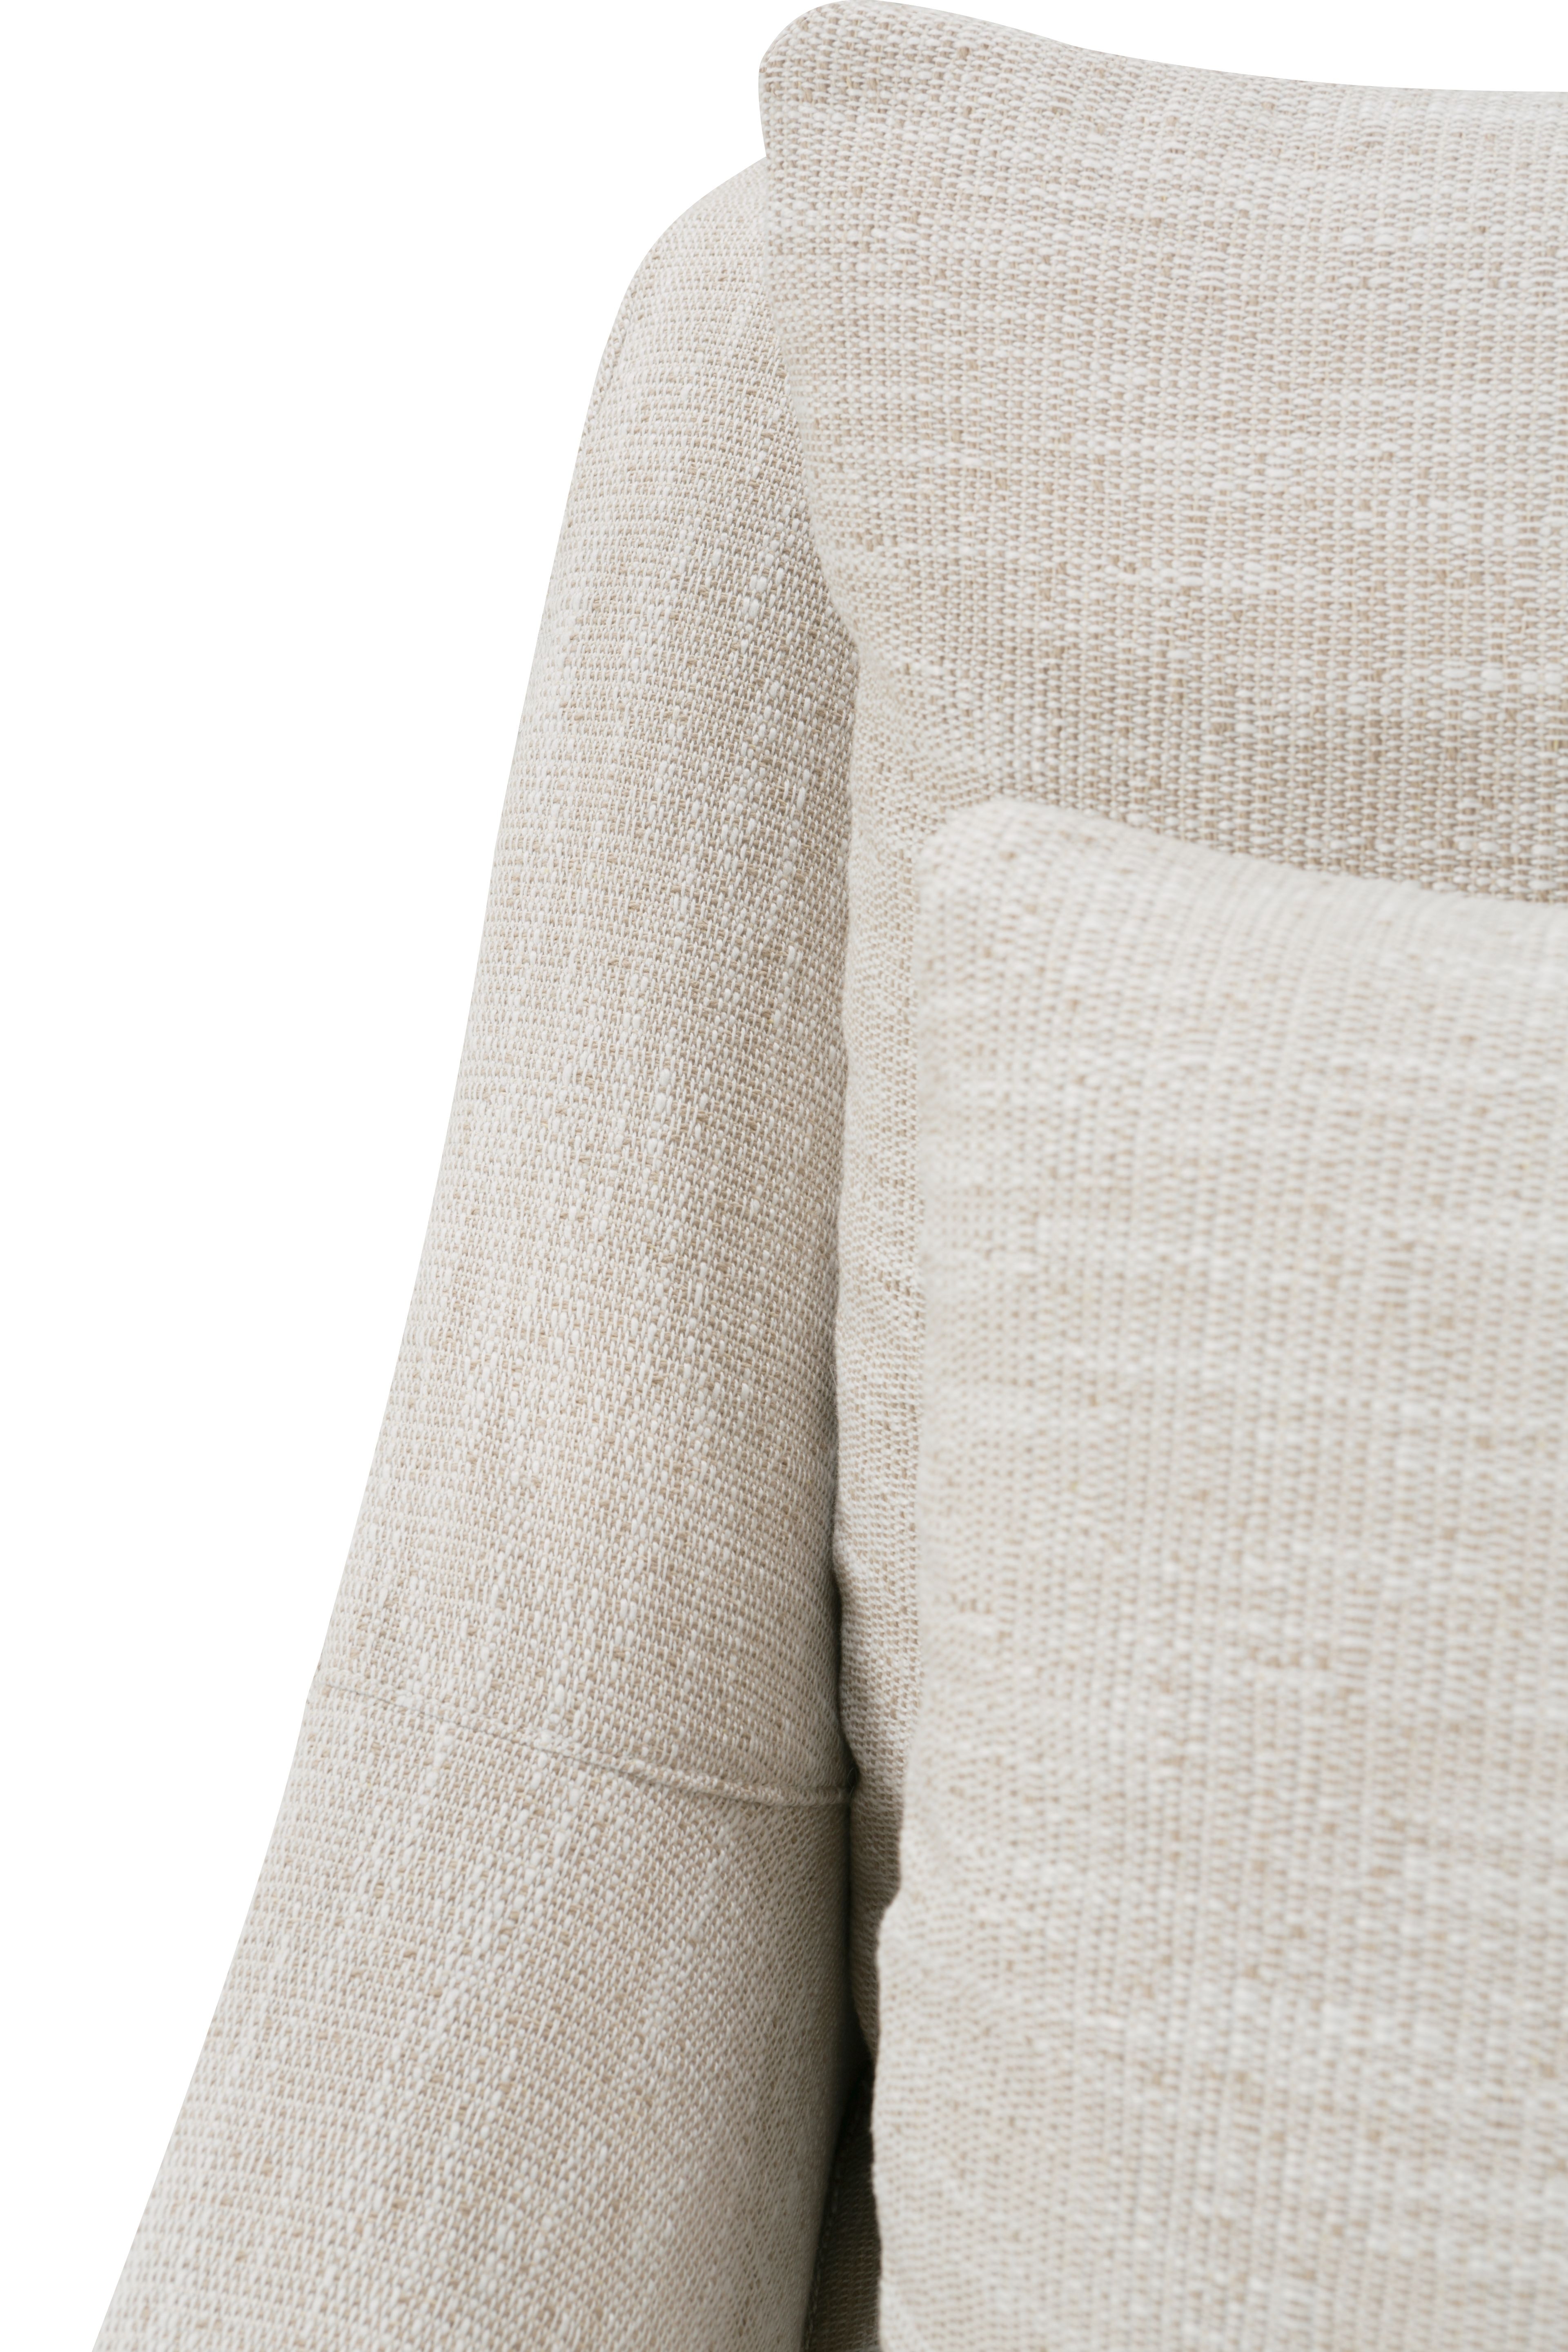 Fraser Slipcover Sofa, Bench Cushion, White, 95" - Image 10